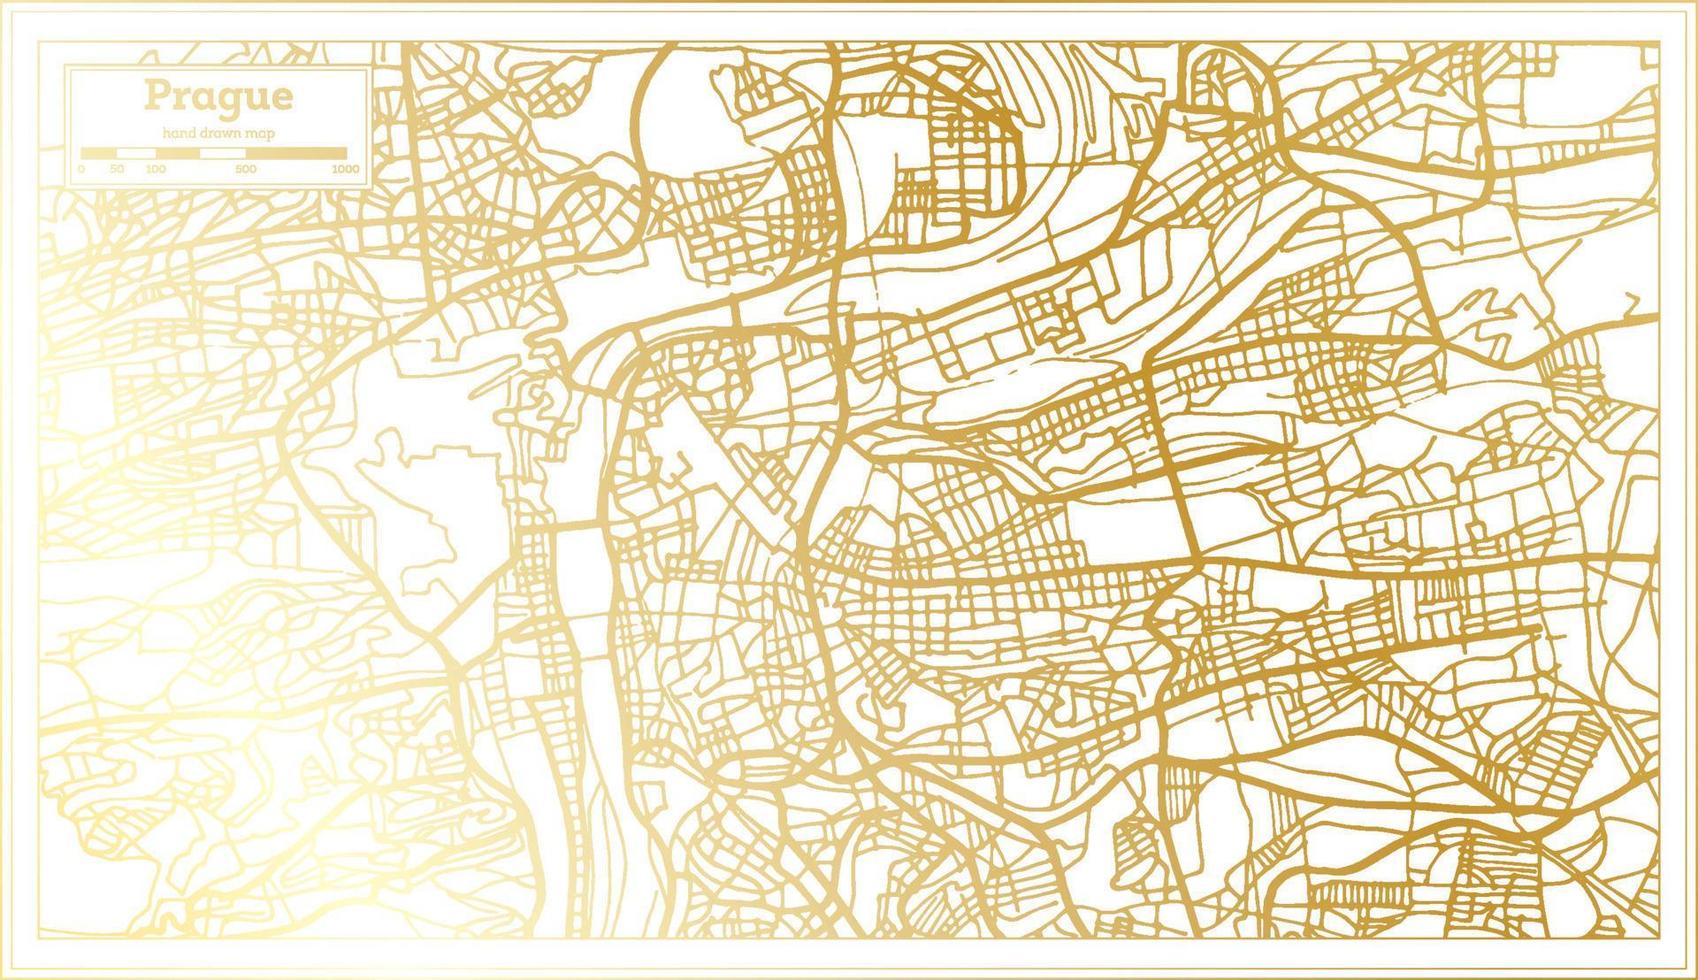 plan de la ville de prague en république tchèque dans un style rétro de couleur dorée. carte muette. vecteur